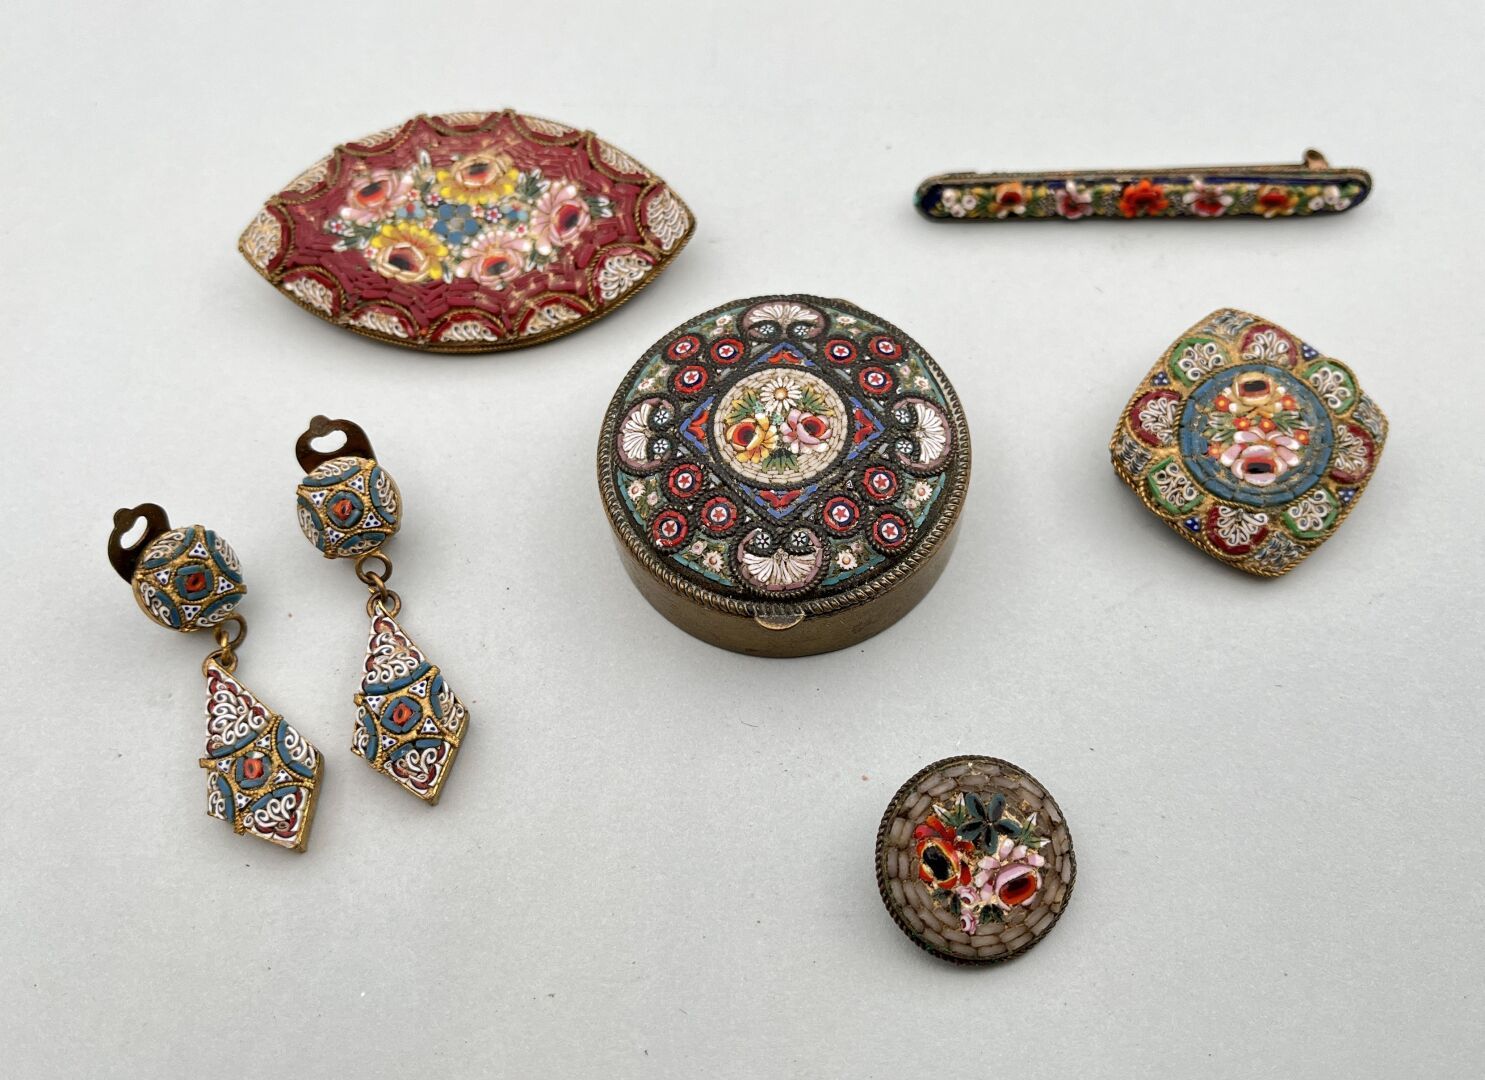 Null 微型马赛克套装包括一个粉盒、四个胸针和一对耳夹
20世纪初的意大利作品